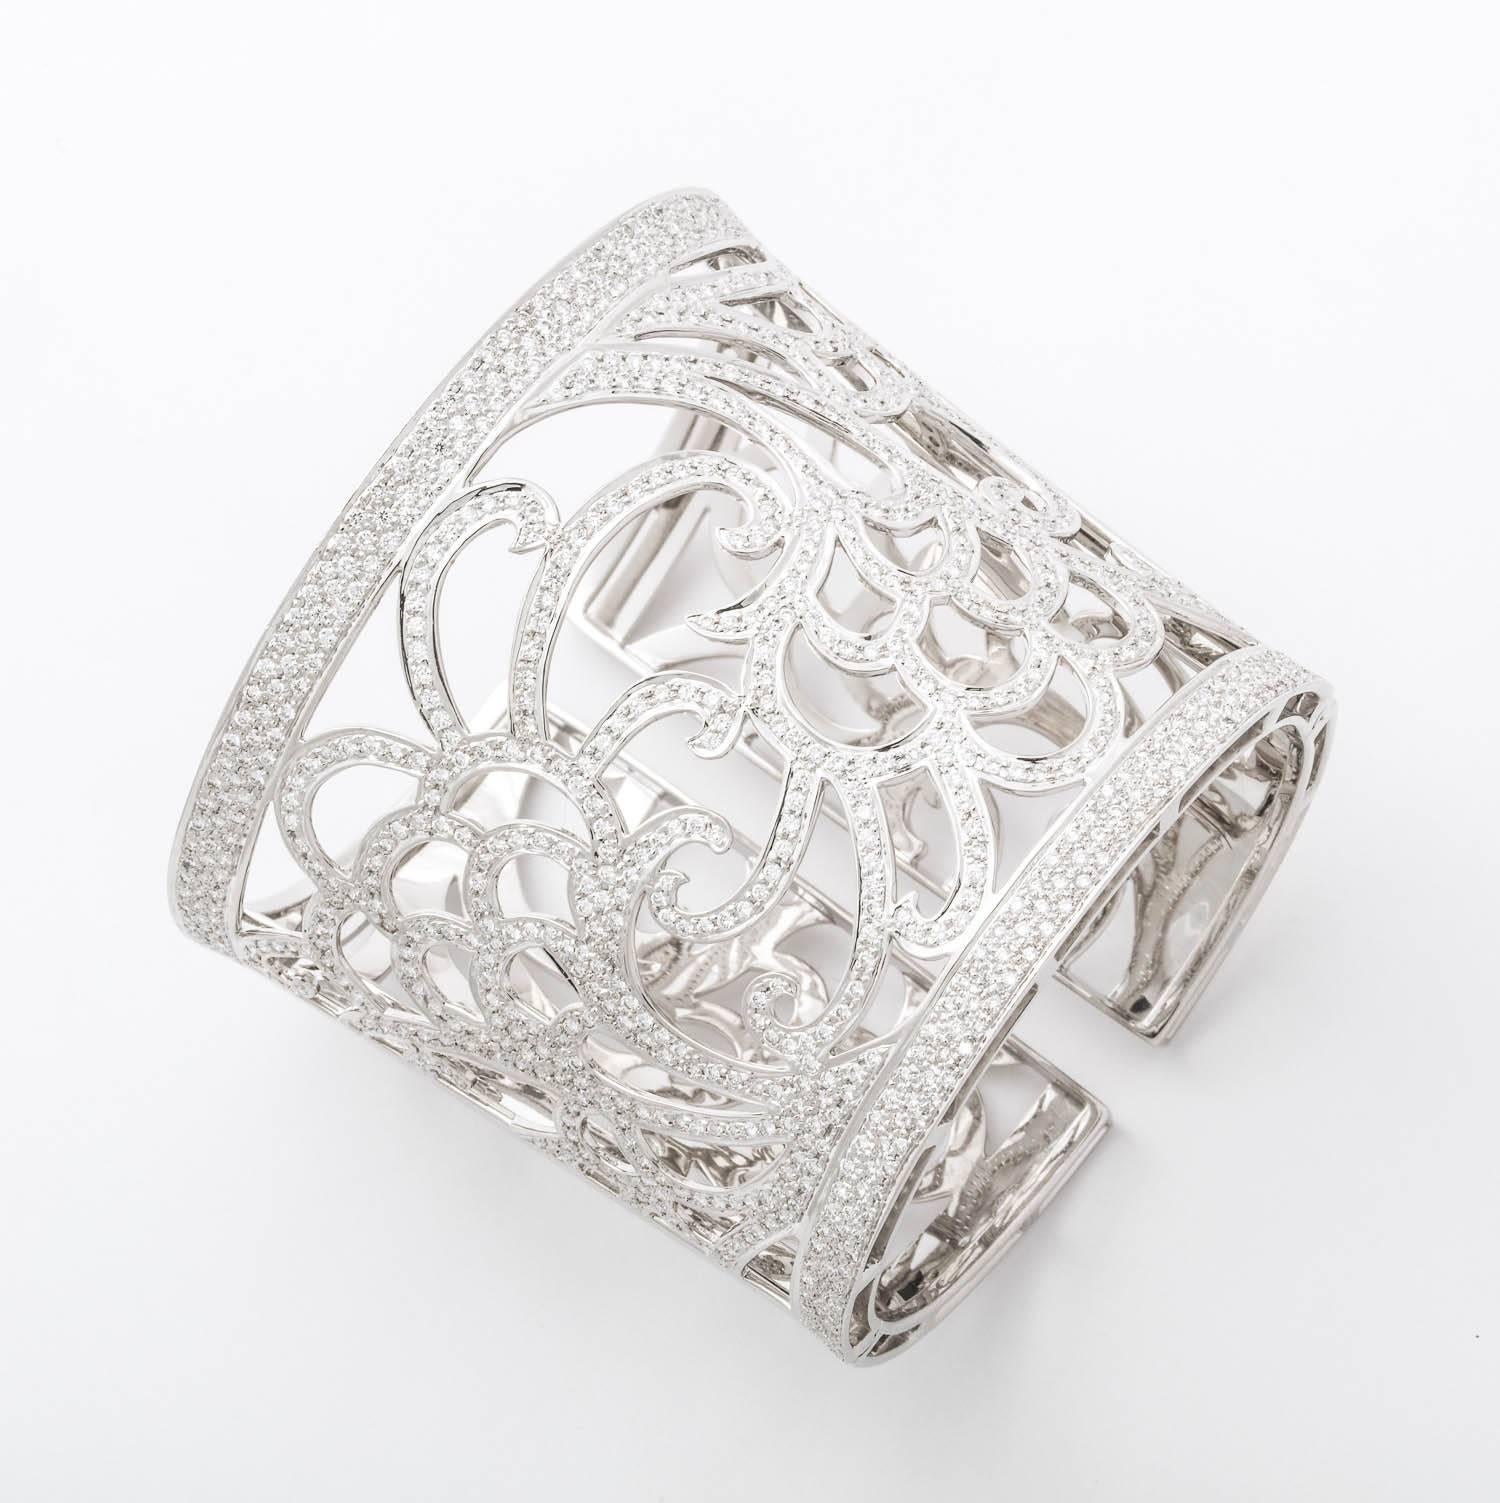 bracelet manchette conique en or blanc 18 carats et diamants contenant 500 diamants pleine taille d'un poids total de 7,33 carats.  121.7 grammes d'or 18k,  Percé à la main et serti d'un magnifique motif floral